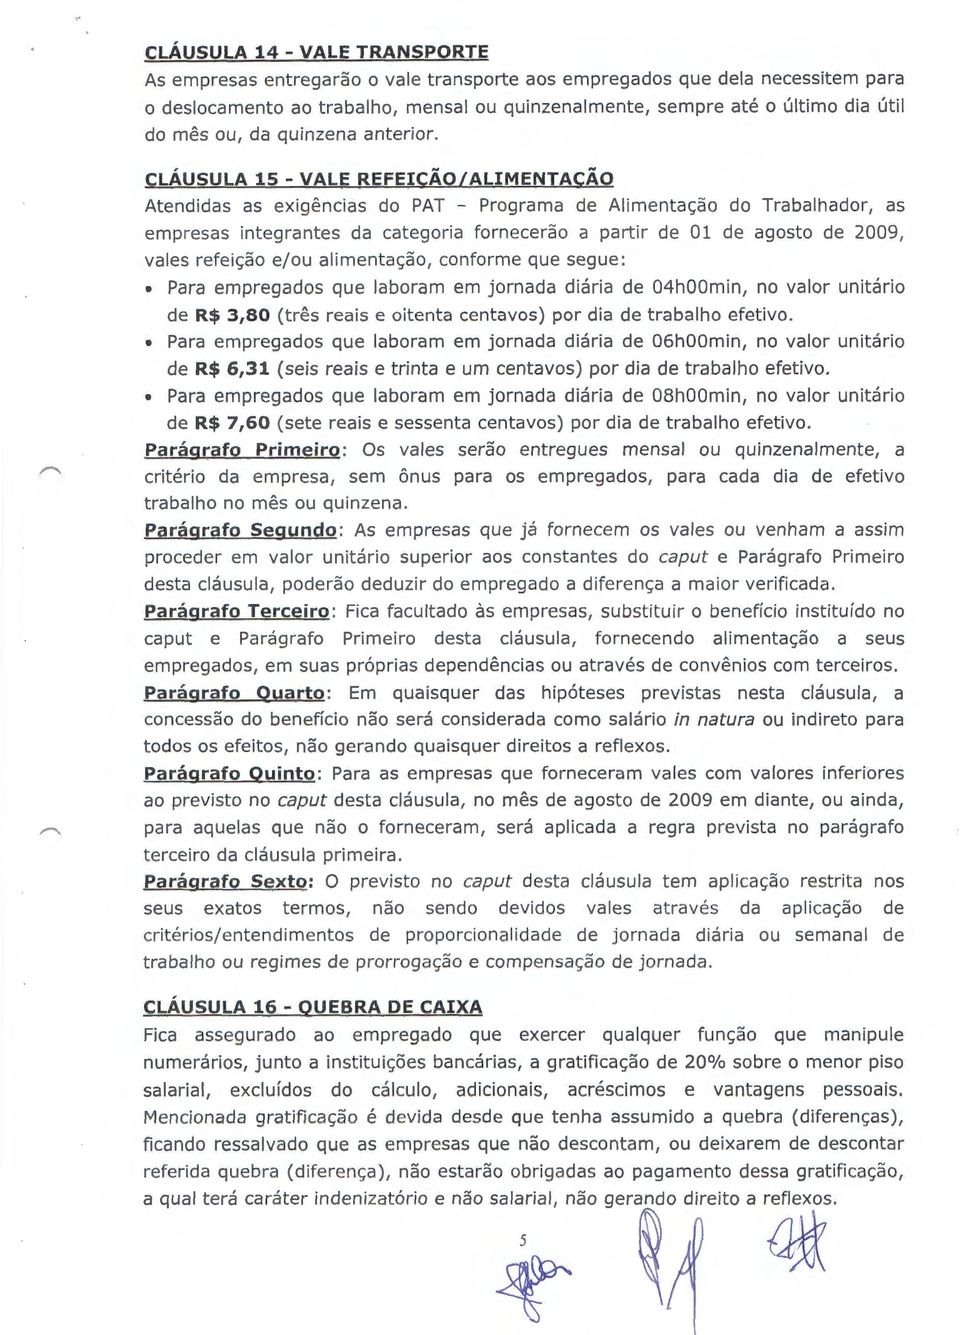 CLAUSULA 15- VALE REFEI~AO/ALIMENTACAO Atendidas as exigencias do PAT - Programa de Alimenta~ao do Trabalhador, as empresas integrantes da categoria fornecerao a partir de 01 de agosto de 2009, vales